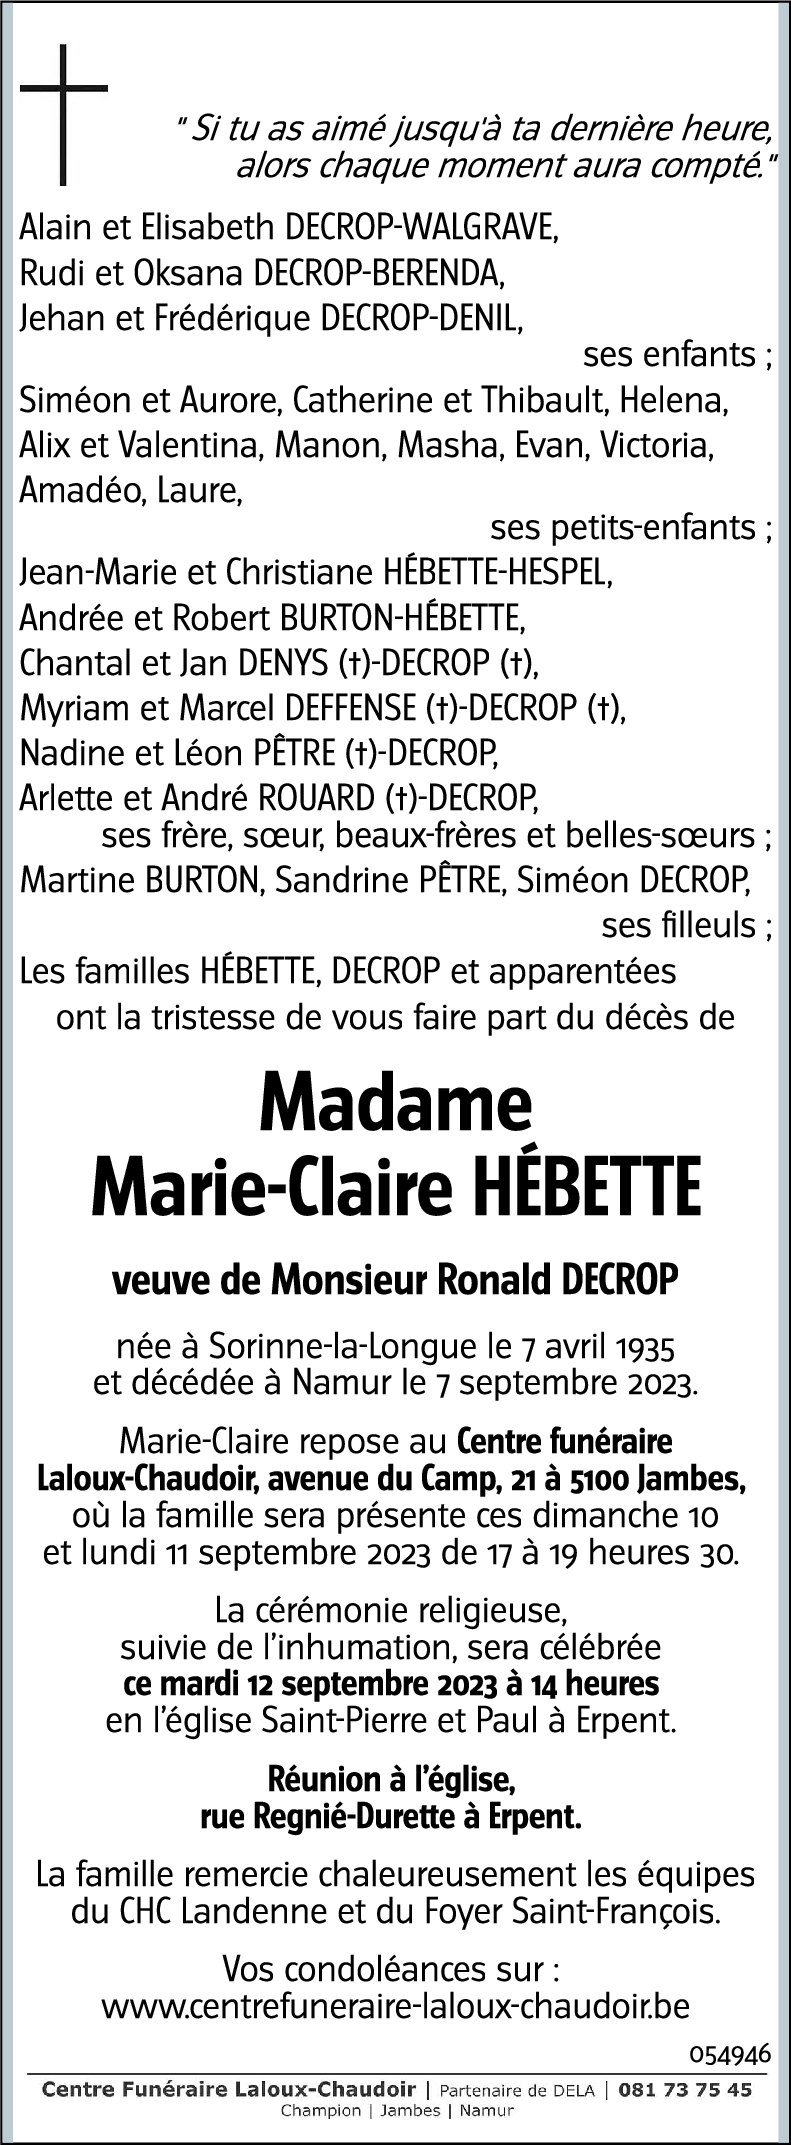 Marie-Claire HÉBETTE